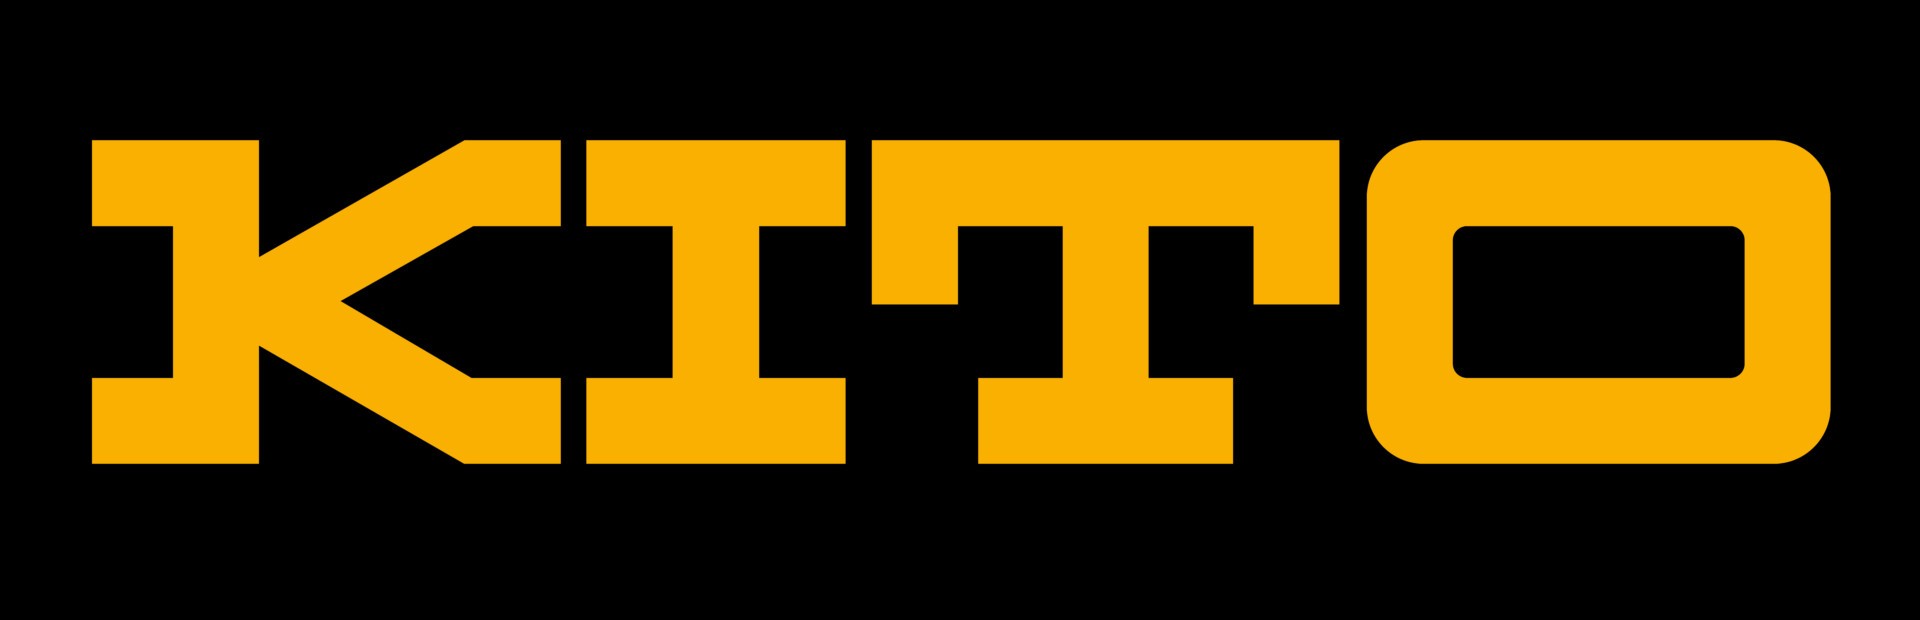 KITO-Logo-yellow-on-black-5328x1721